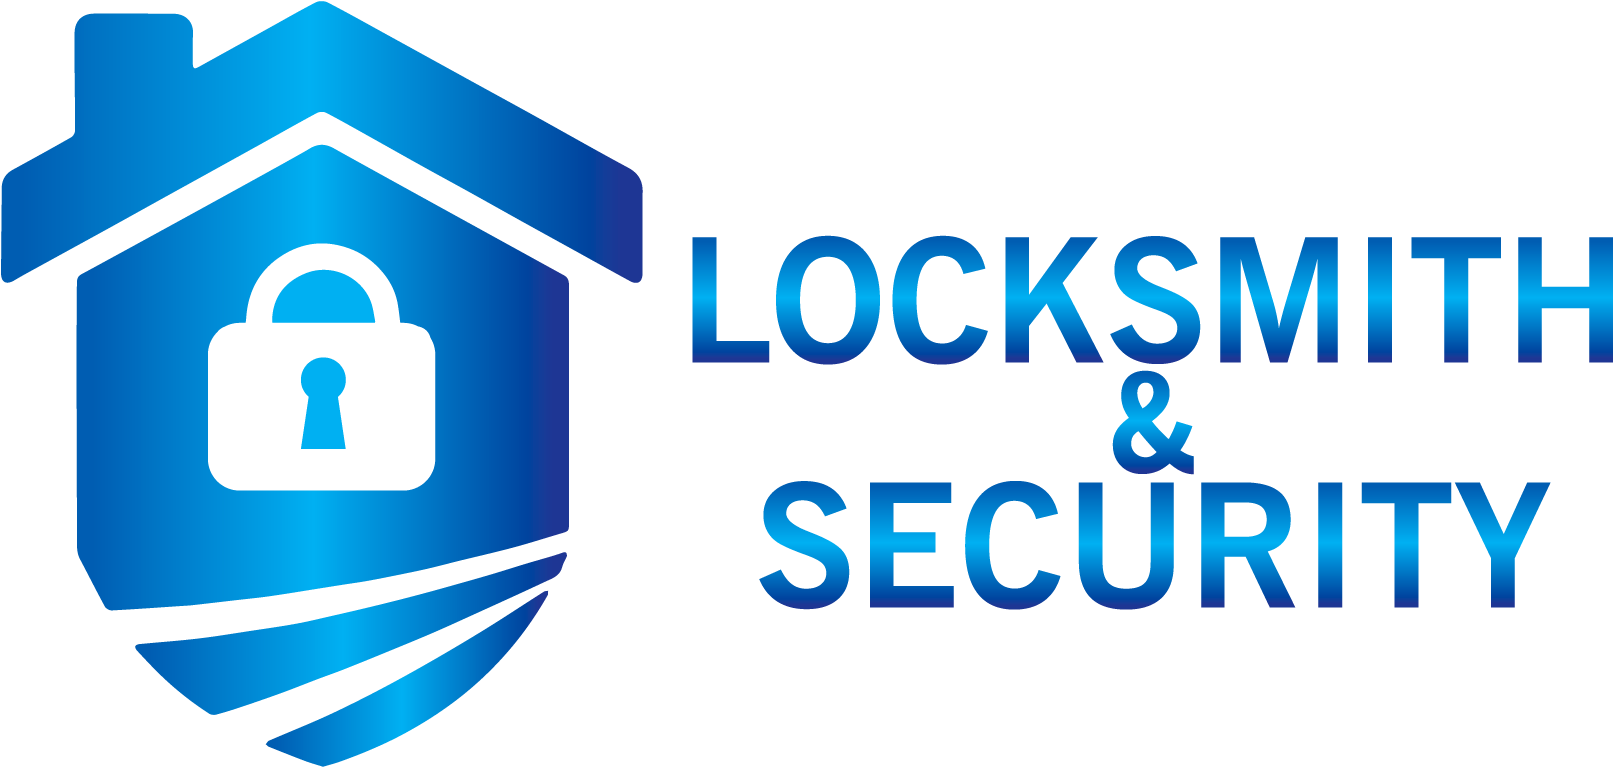 Locksmith & Security Inc - Graphic Design (2000x813)